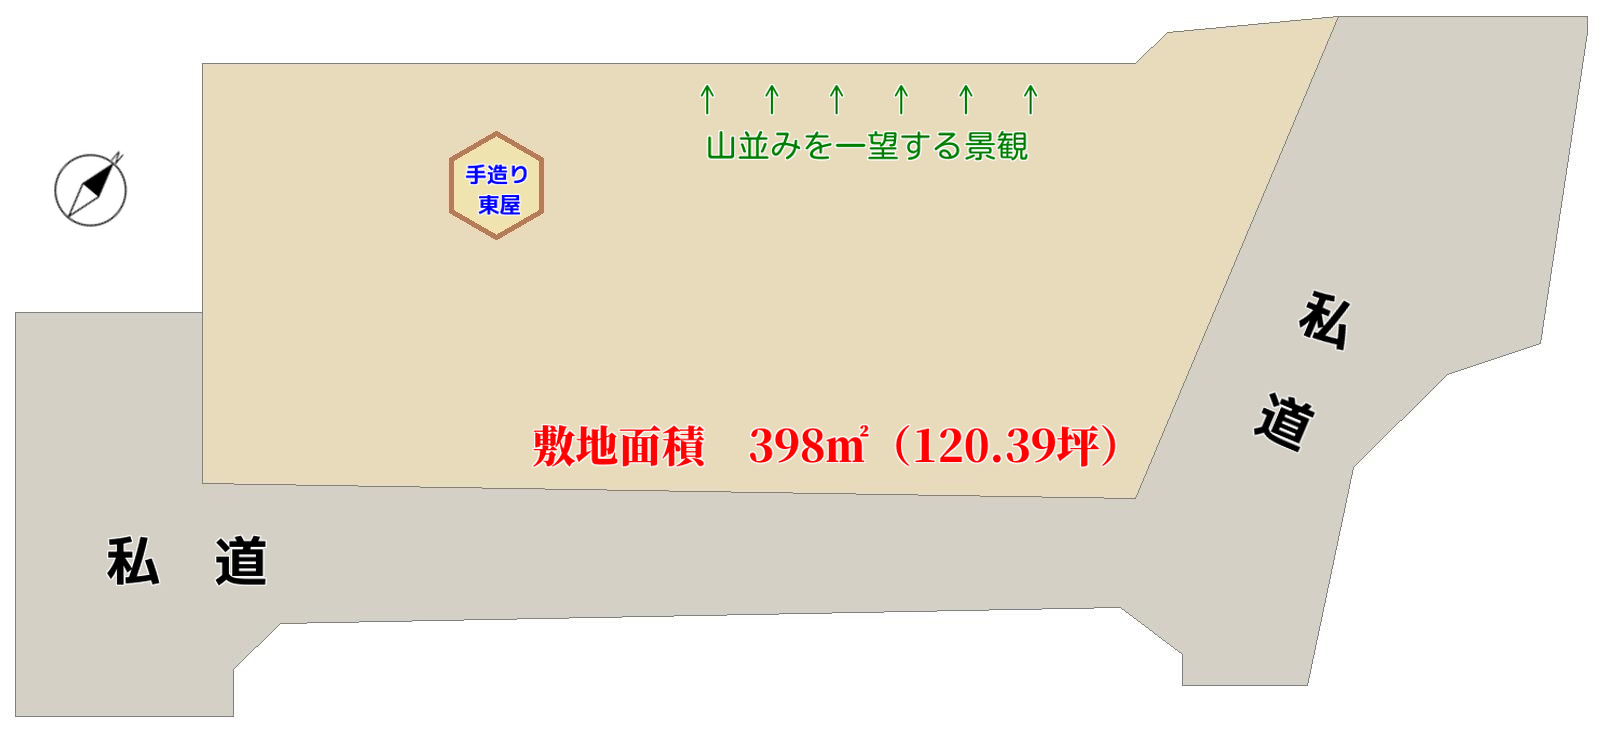 千葉県館山市岡田の売地概略図